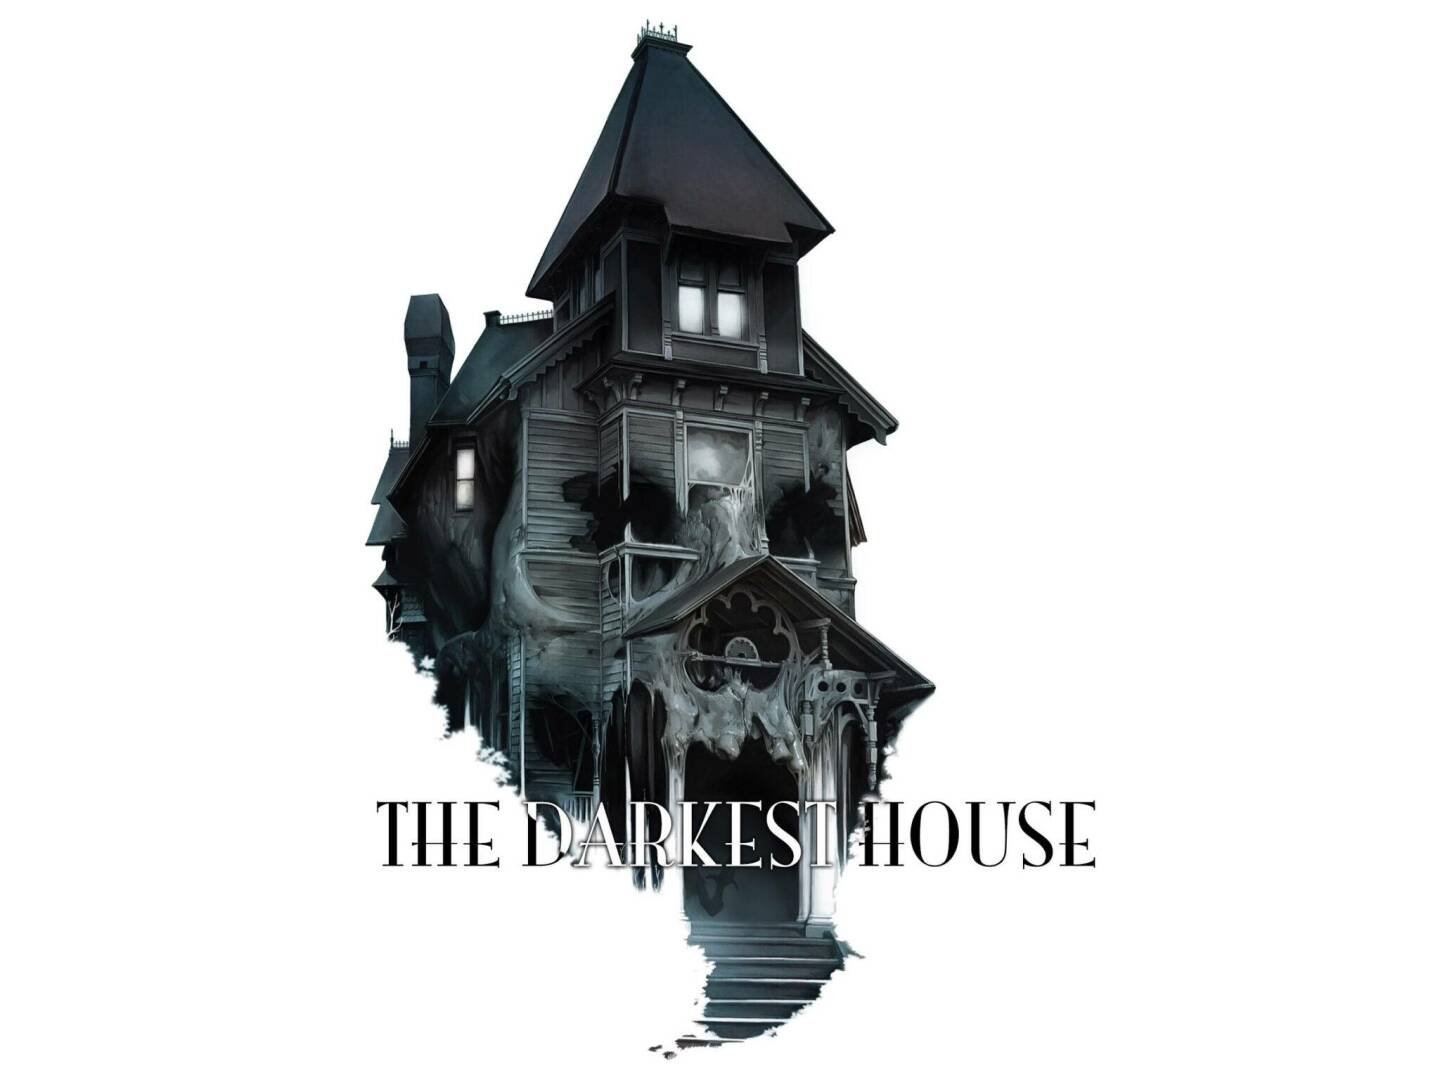 Immagine di Monte Cook Games svela il progetto The Darkest House